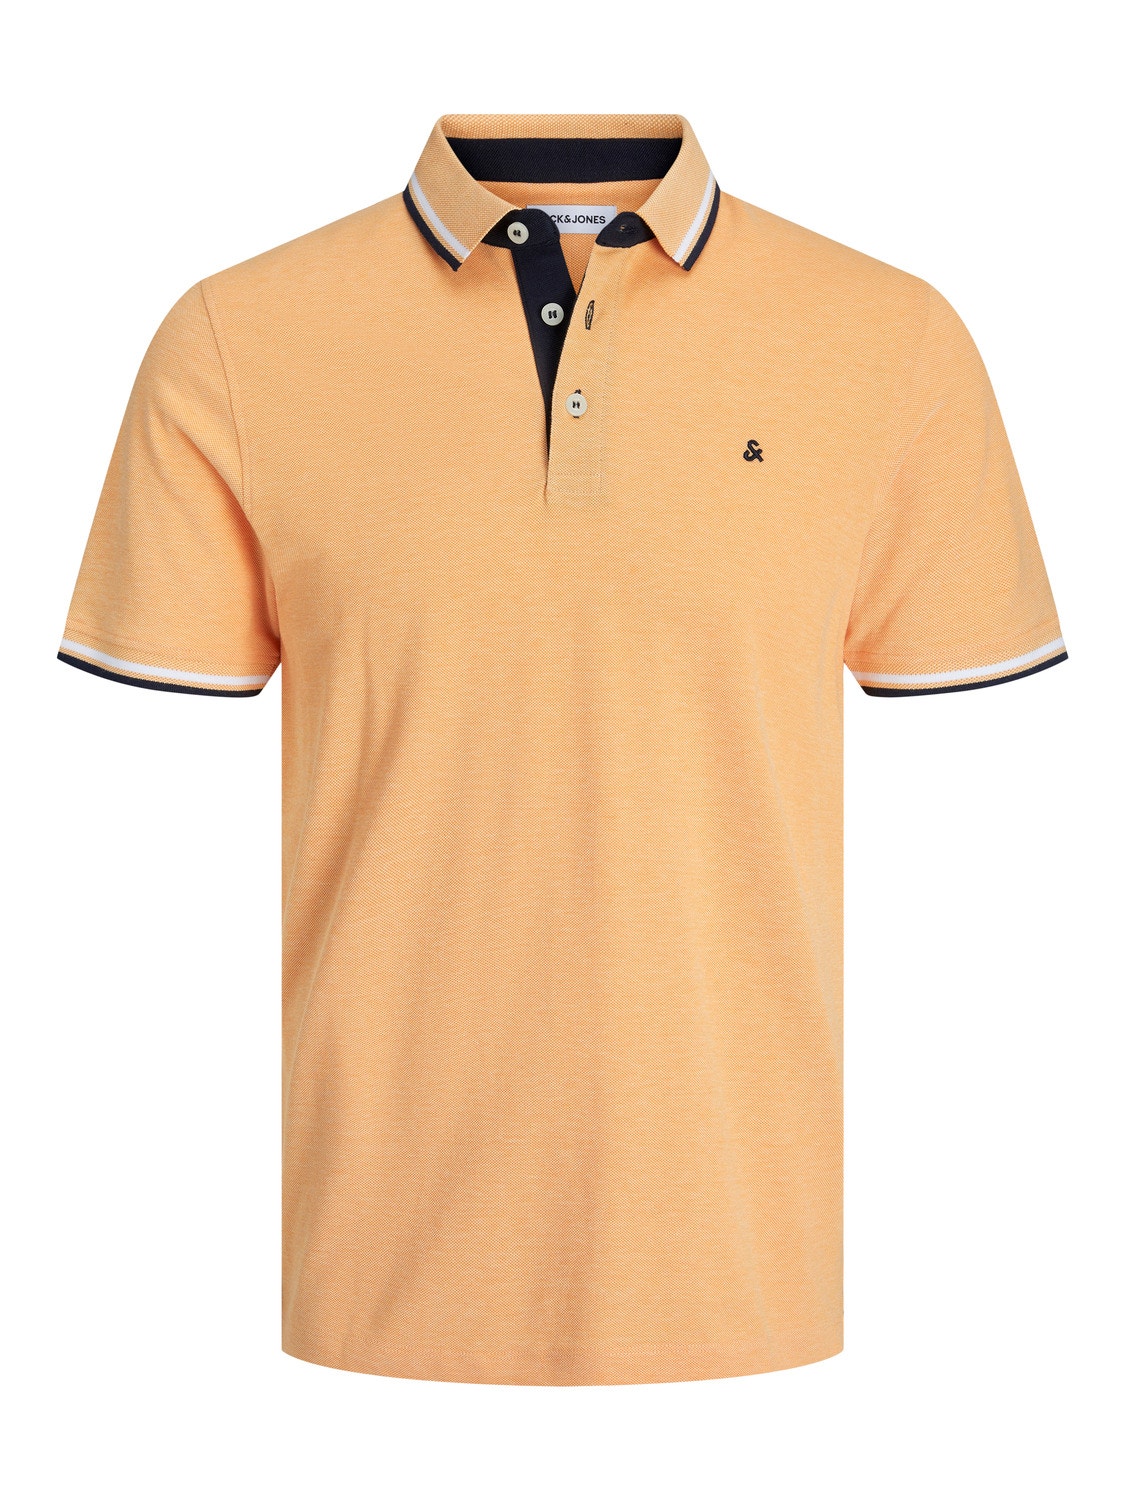 Jack & Jones Plus Size Yksivärinen T-shirt -Apricot Ice  - 12143859